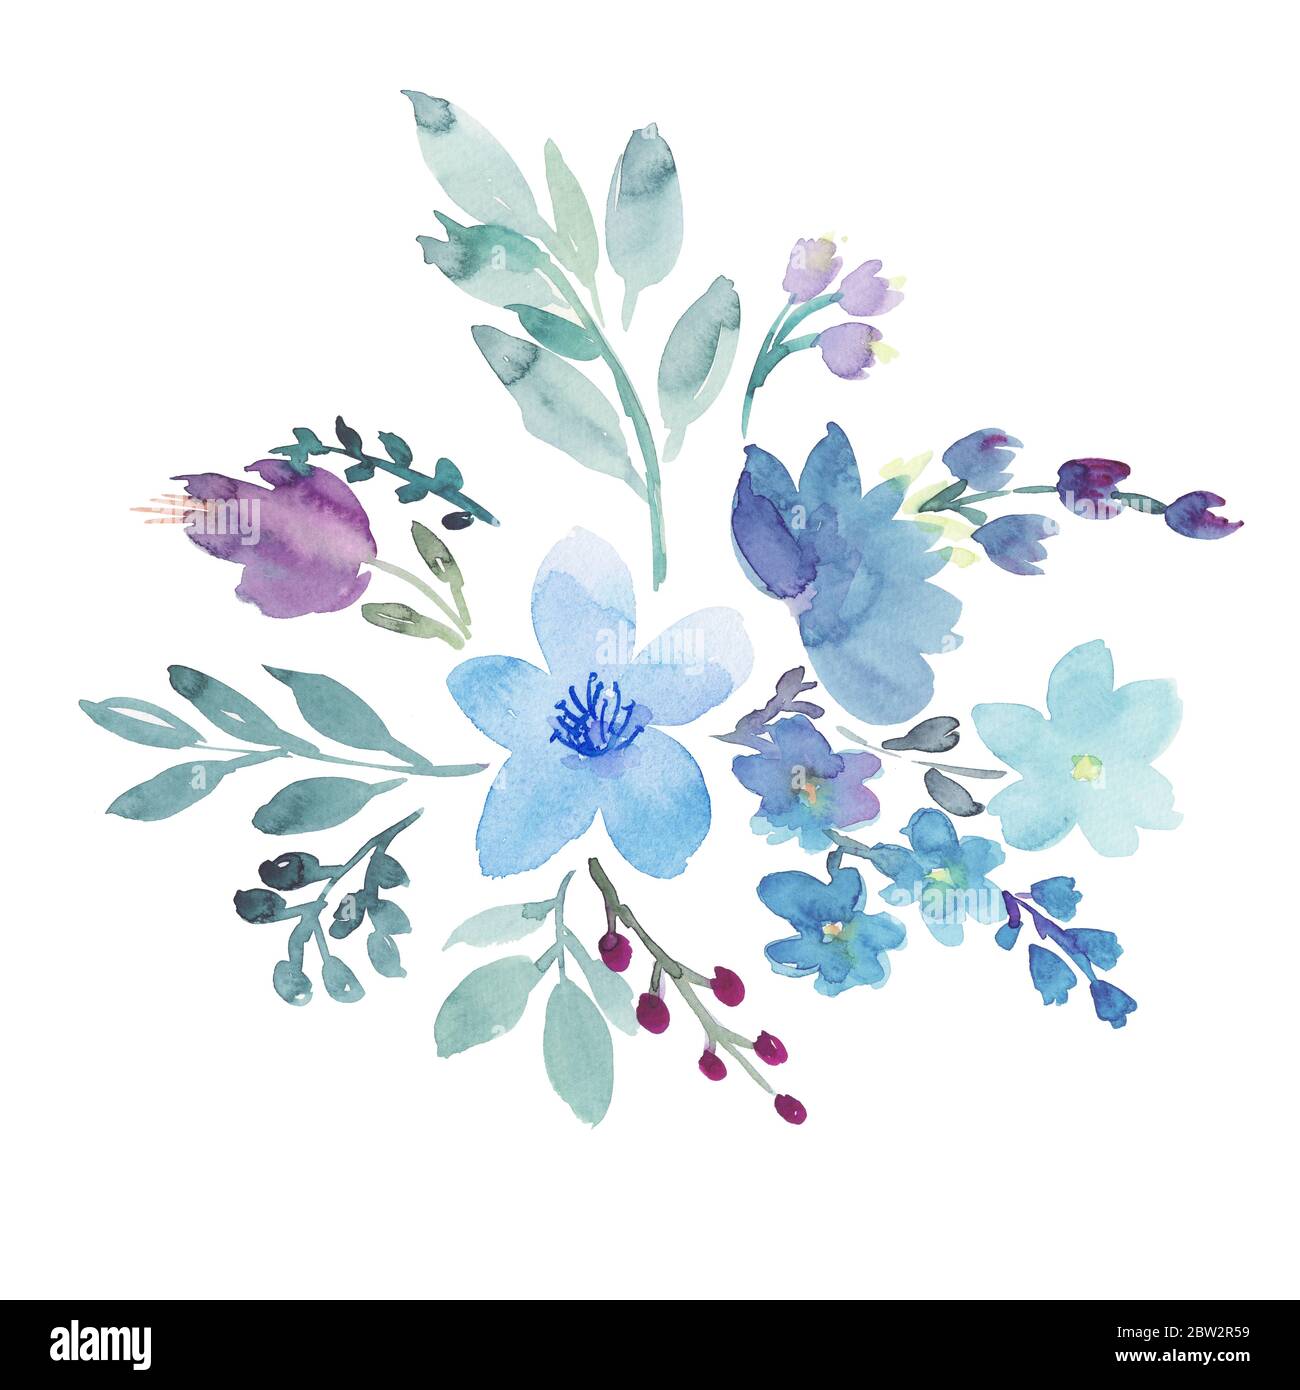 Dessin à la main boho aquarelle illustration florale avec fleurs bleues, pourpres, baies bleues et feuilles vertes. Banque D'Images